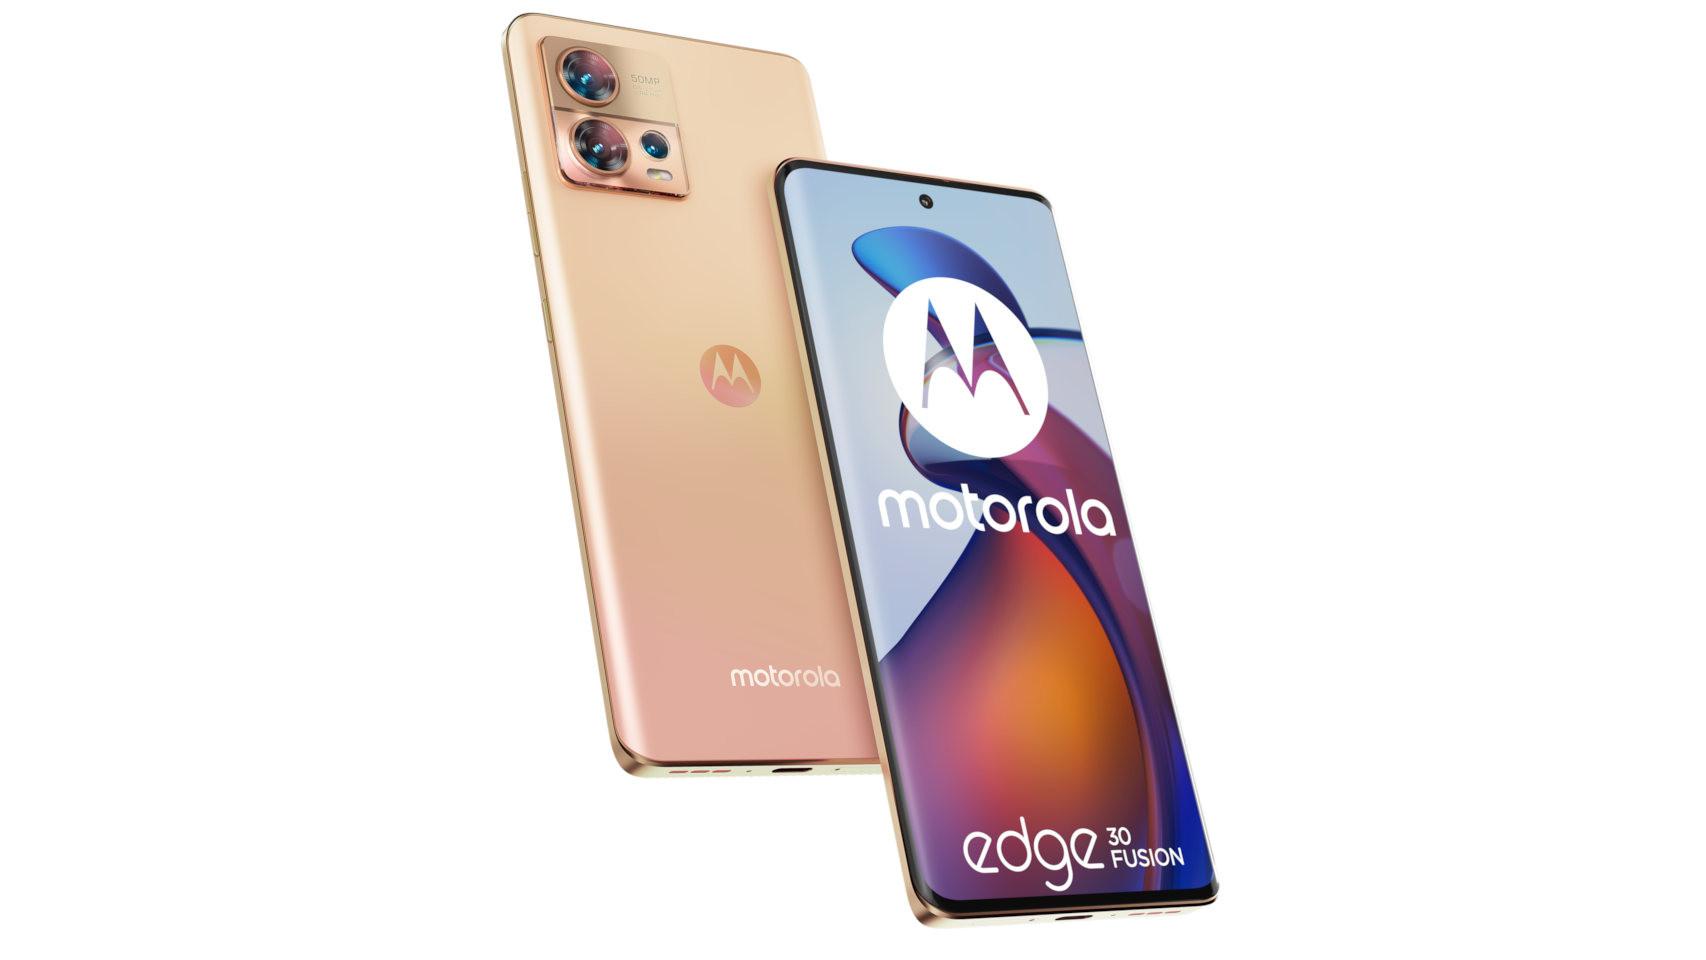 Probamos el Edge 30 Fusion: Motorola cambia el diseño de su smartphone para  competir con la alta gama - LA NACION